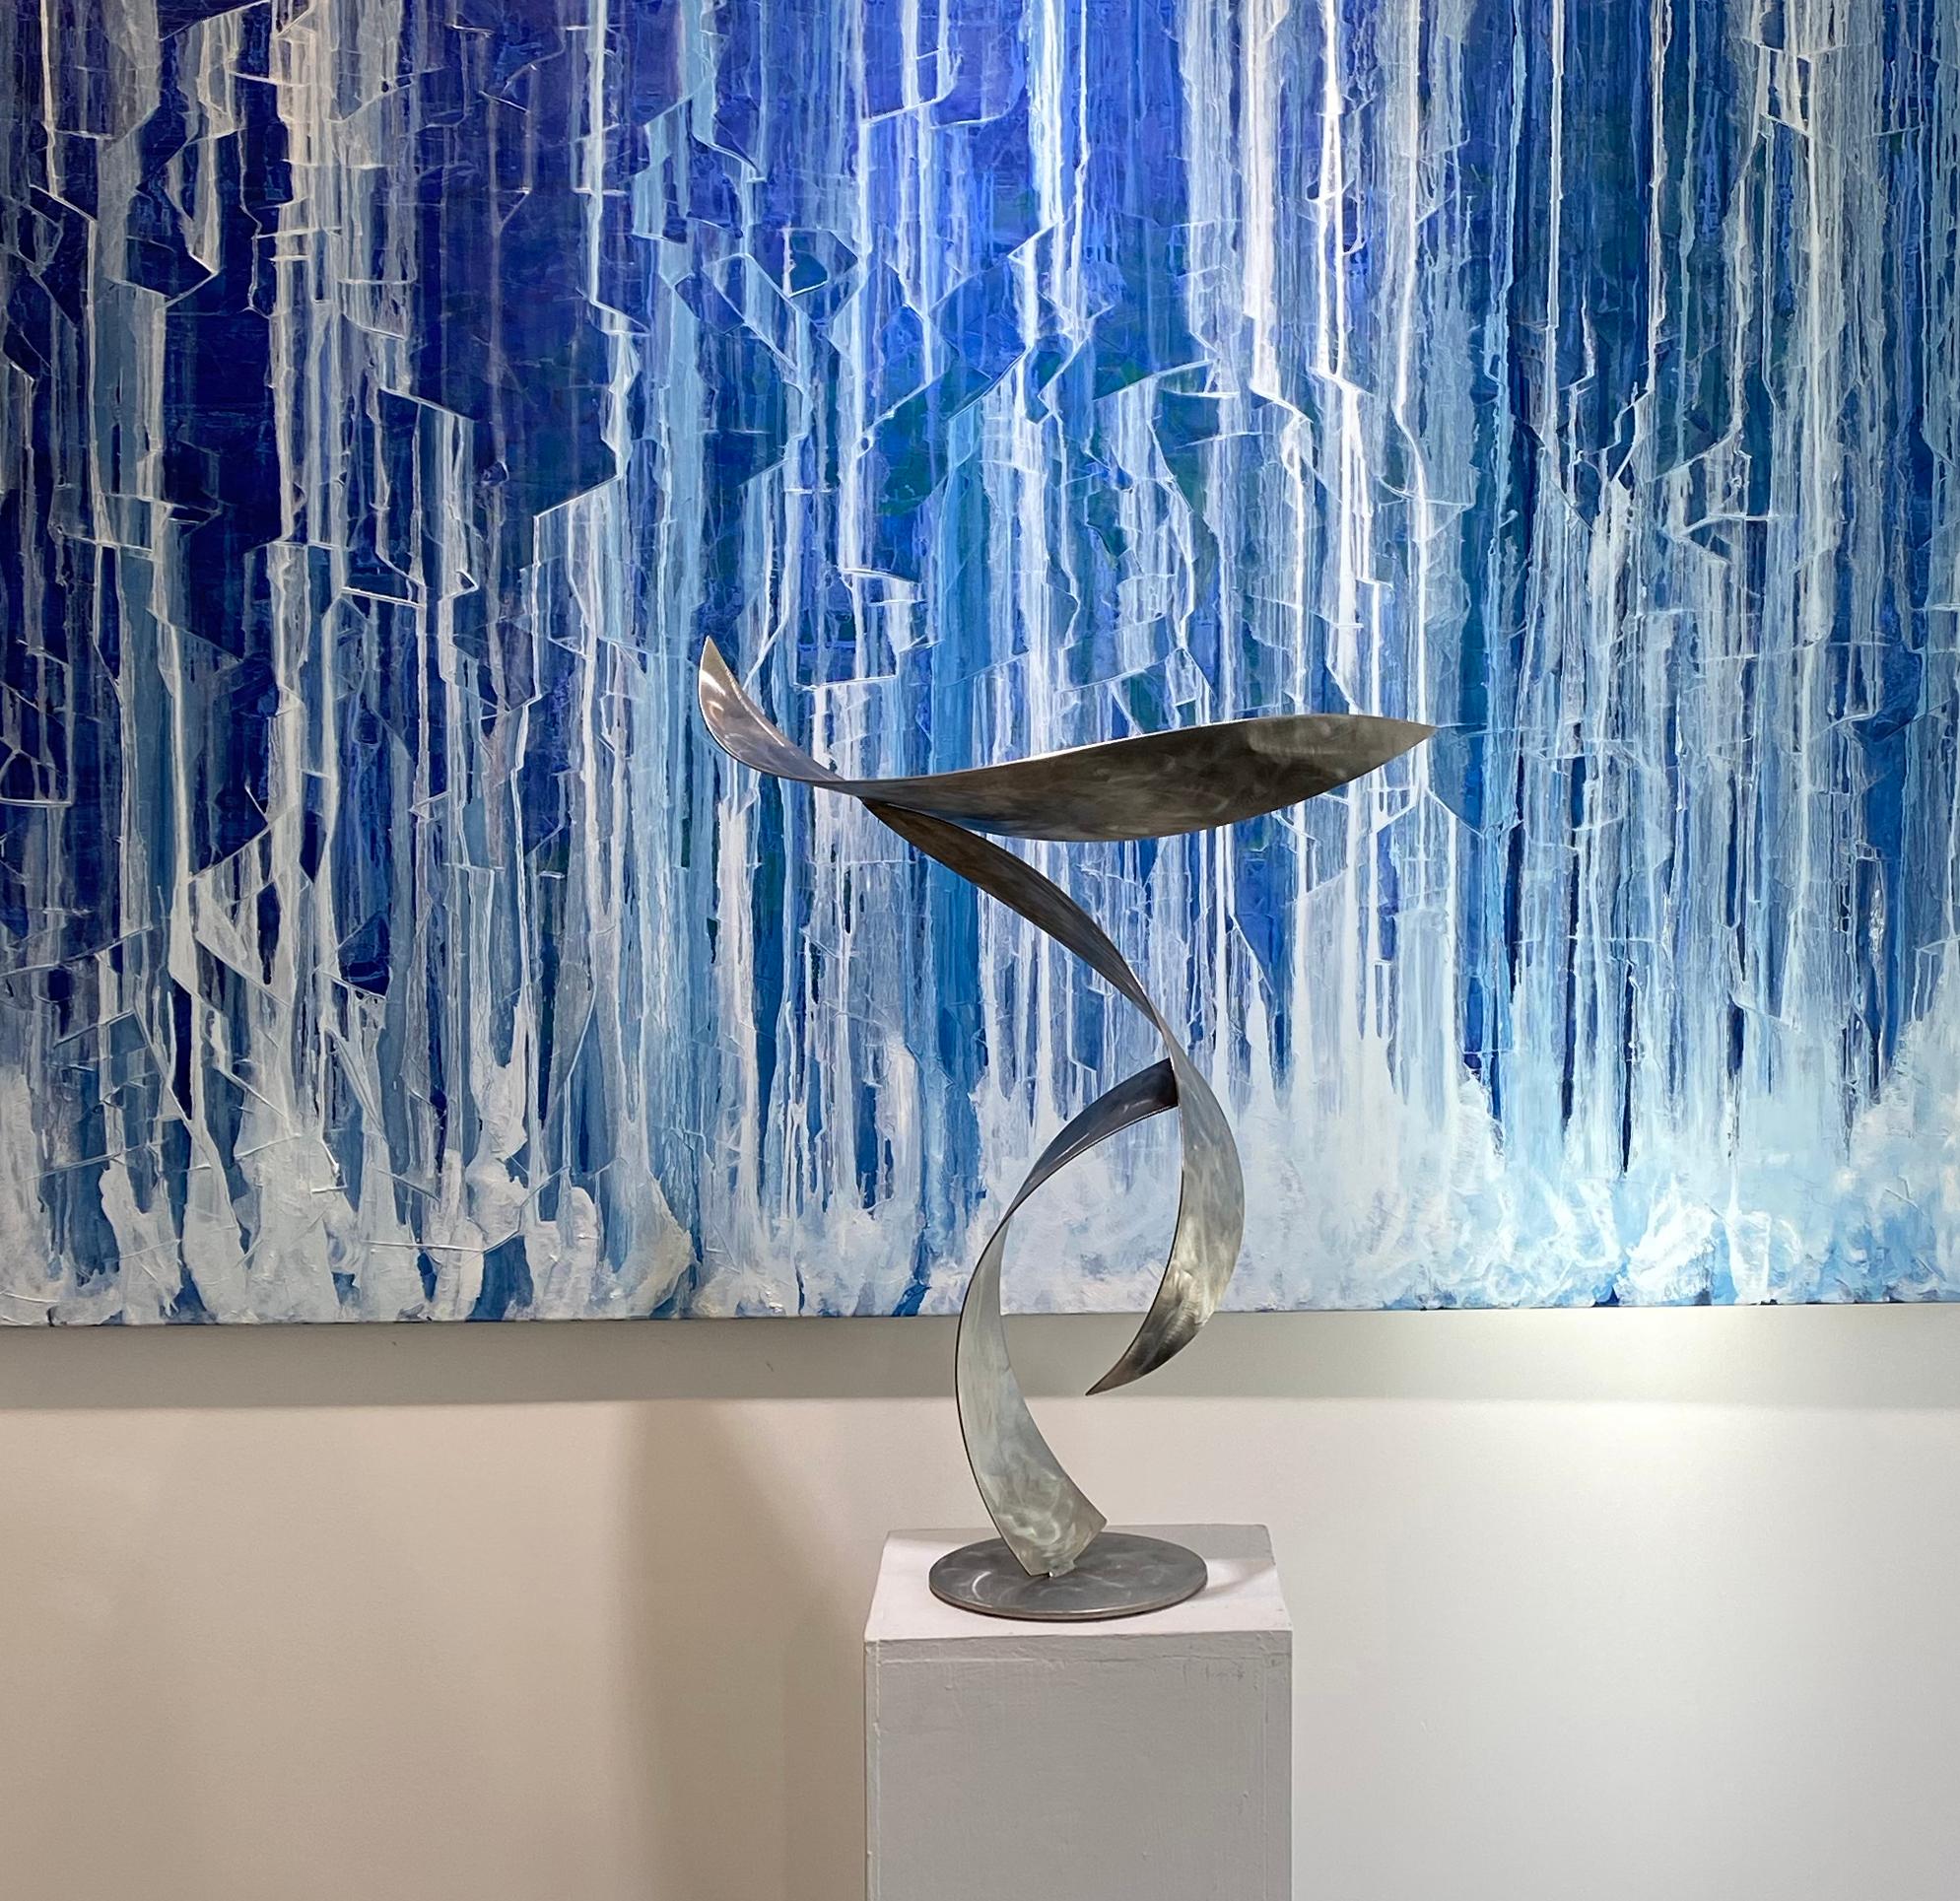 Diese mittelgroße abstrakte zeitgenössische Skulptur des Künstlers Joe Sorge ist aus Edelstahl gefertigt. Die Stahlstreifen, aus denen dieses Stück besteht, haben eine gebogene, konkave Form und eine schöne Textur. Das Werk wirft einzigartige